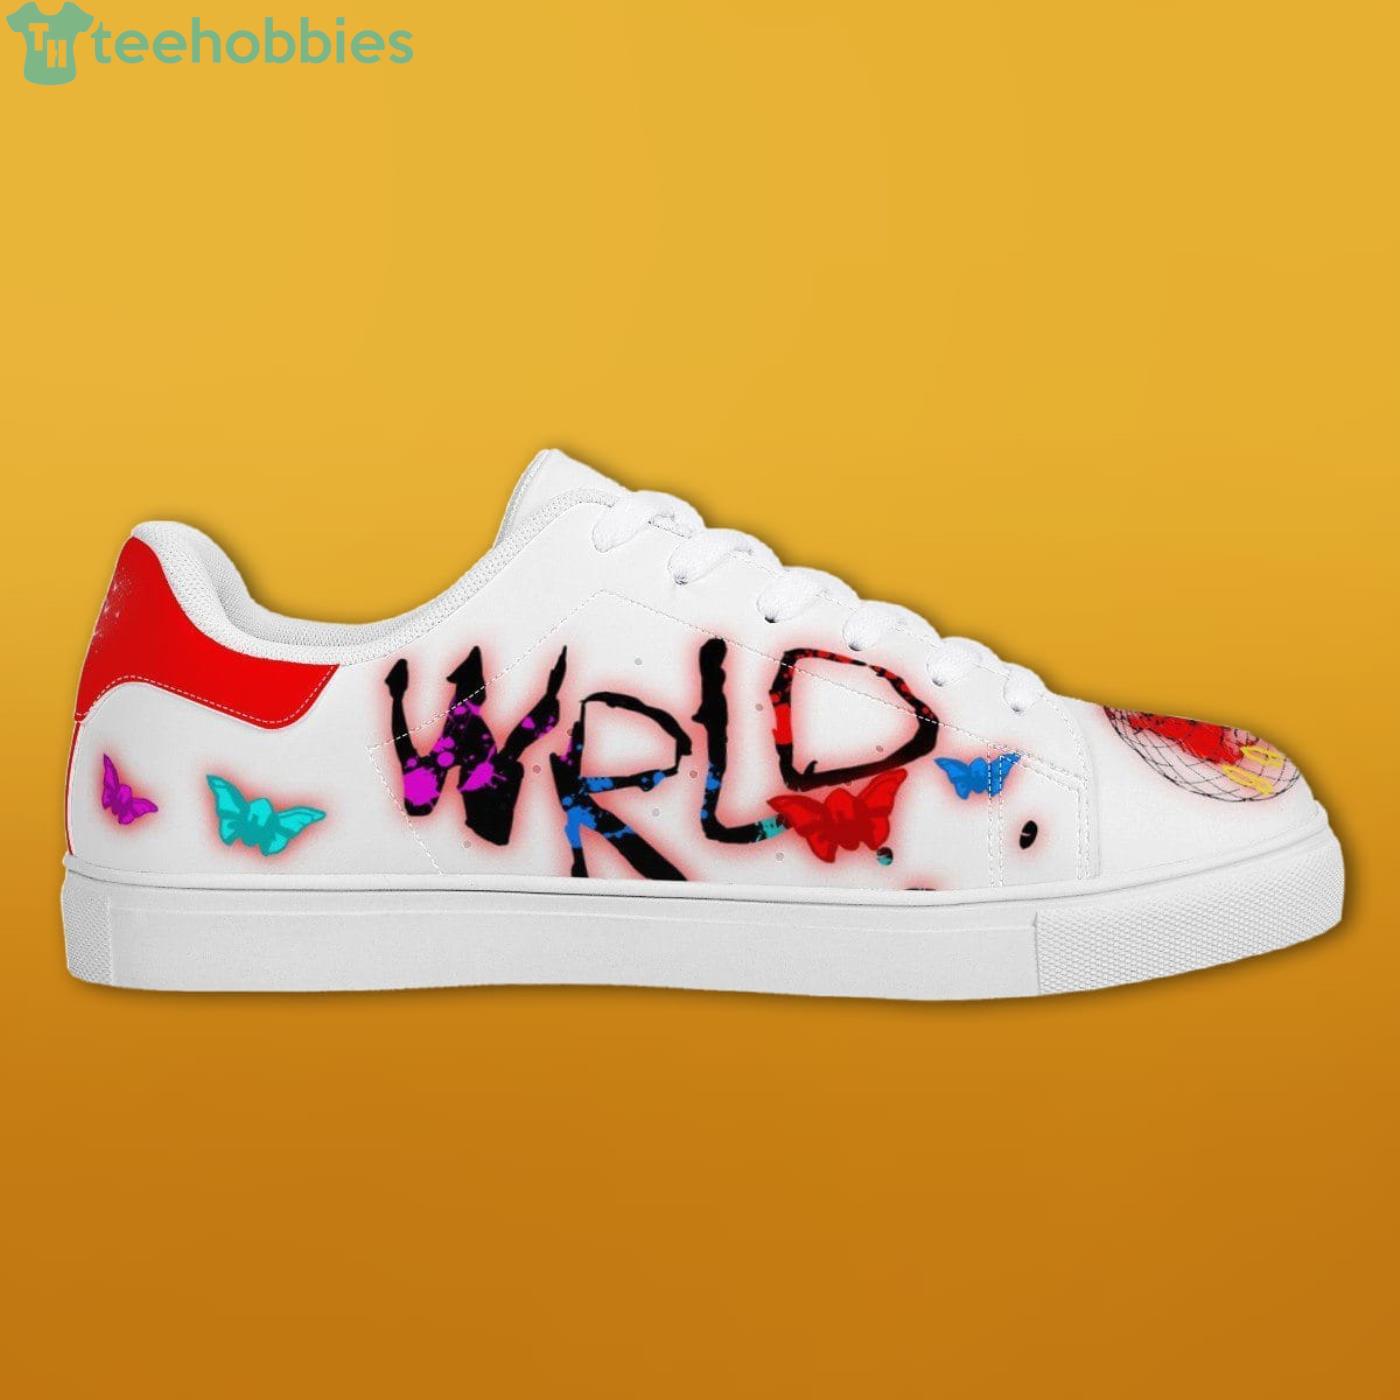 Juice Wrld 999 White Slip On Shoes For Men And Women - Freedomdesign